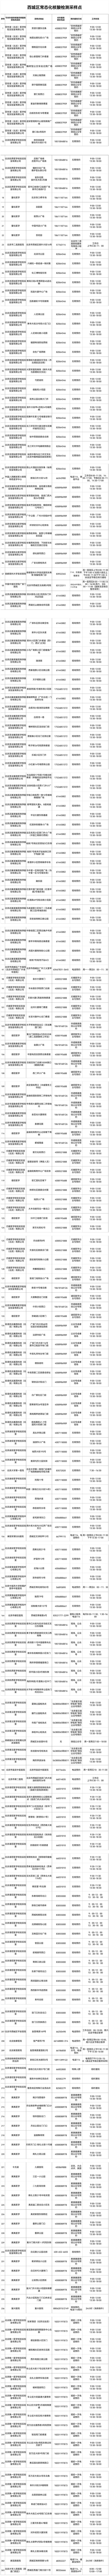 北京市西城区设立263个免费常态化核酸检测采样点